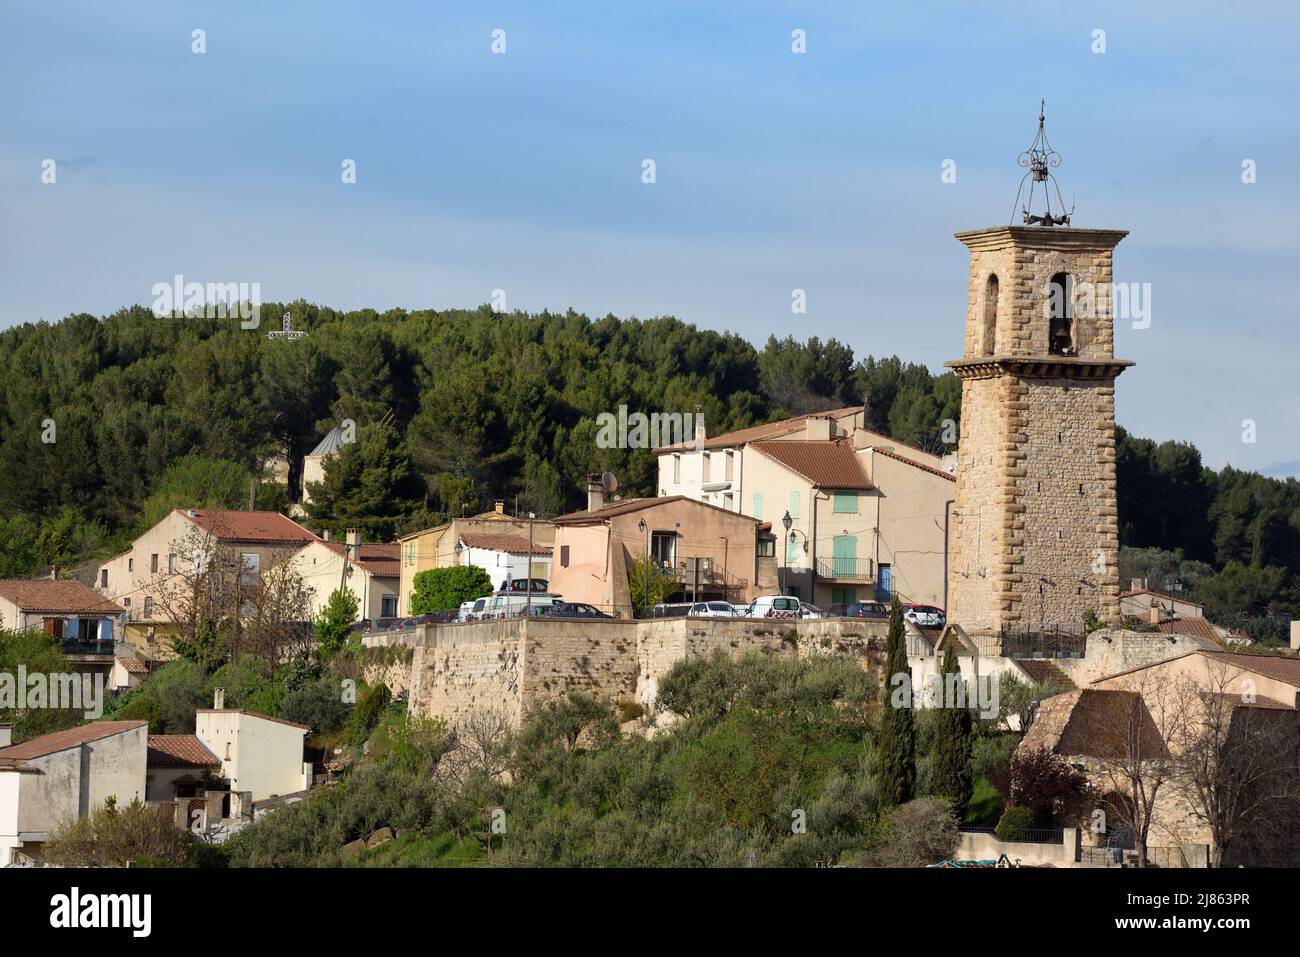 Vue sur la vieille ville ou l'ancien village de Hilltop avec son beffroi Gardanne Bouches-du-Rhône Provence c18th Banque D'Images